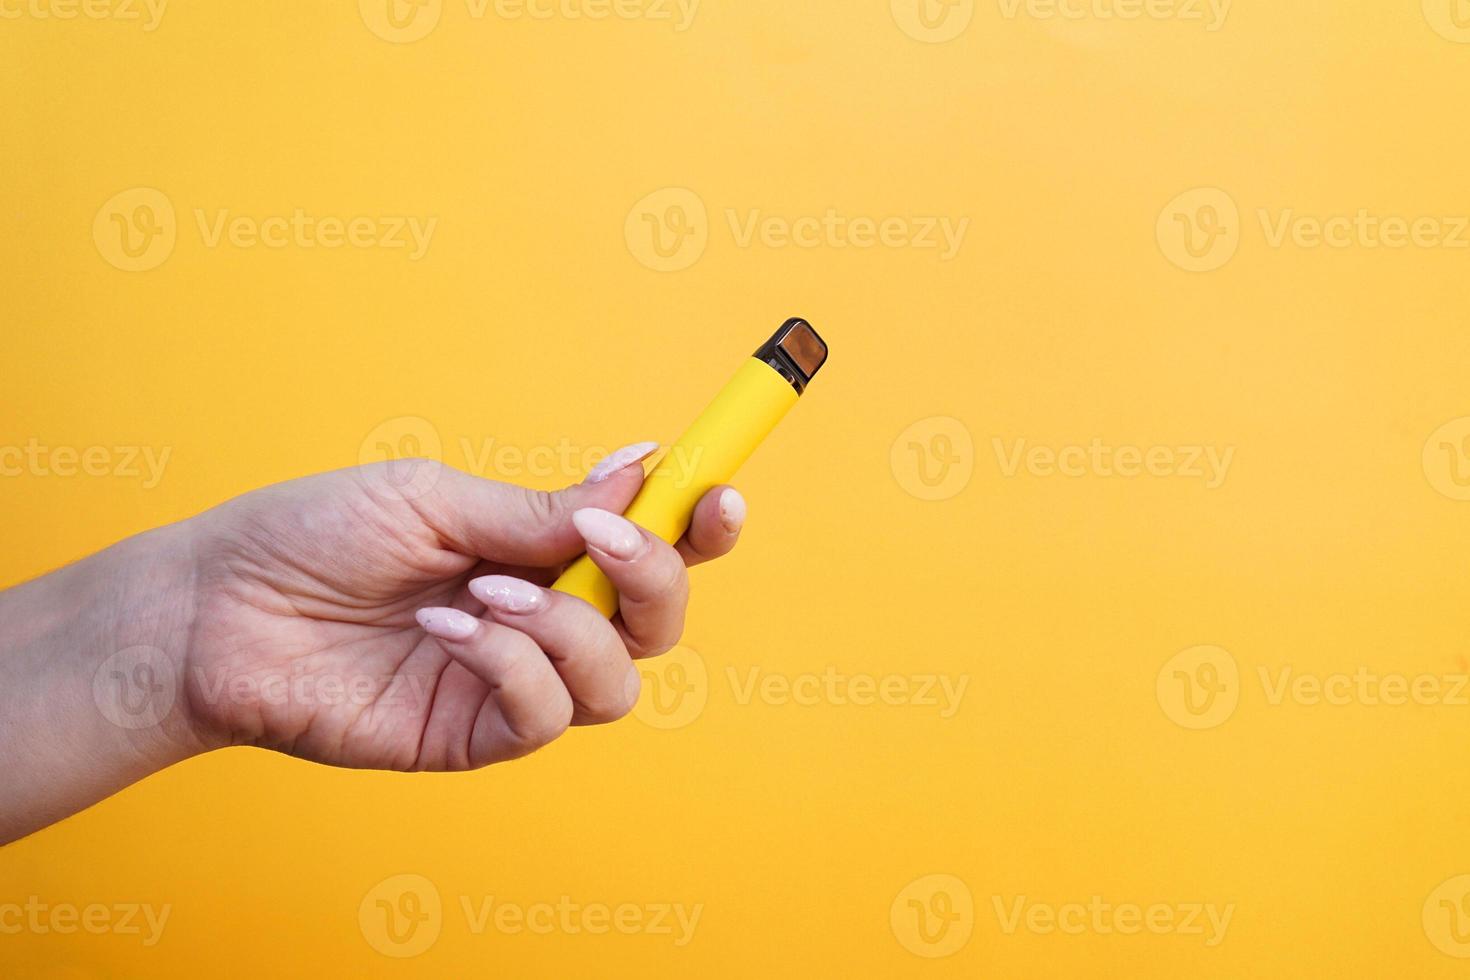 gele wegwerp elektronische sigaret in vrouwelijke hand foto